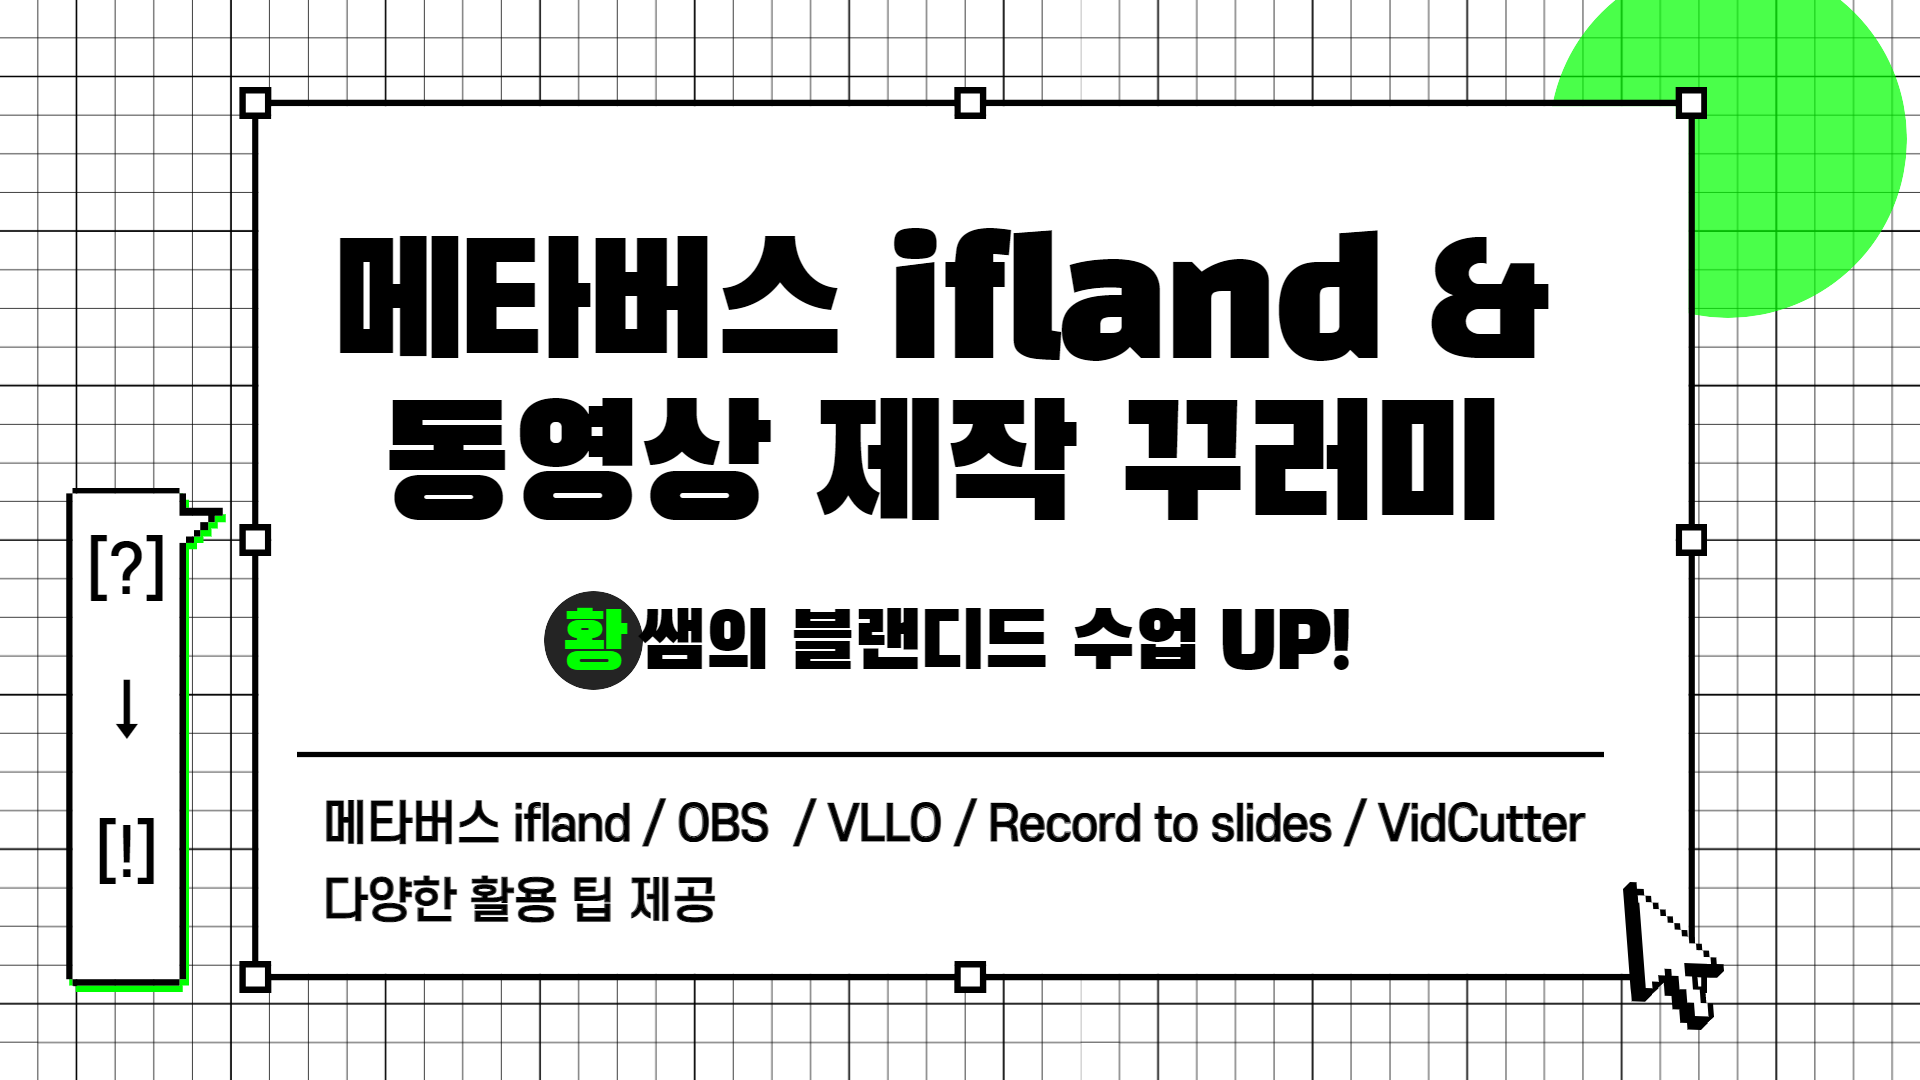 [?] → [!] 황쌤의 블랜디드 수업 UP!(메타버스 ifland, 동영상 자료 제작 꾸러미)